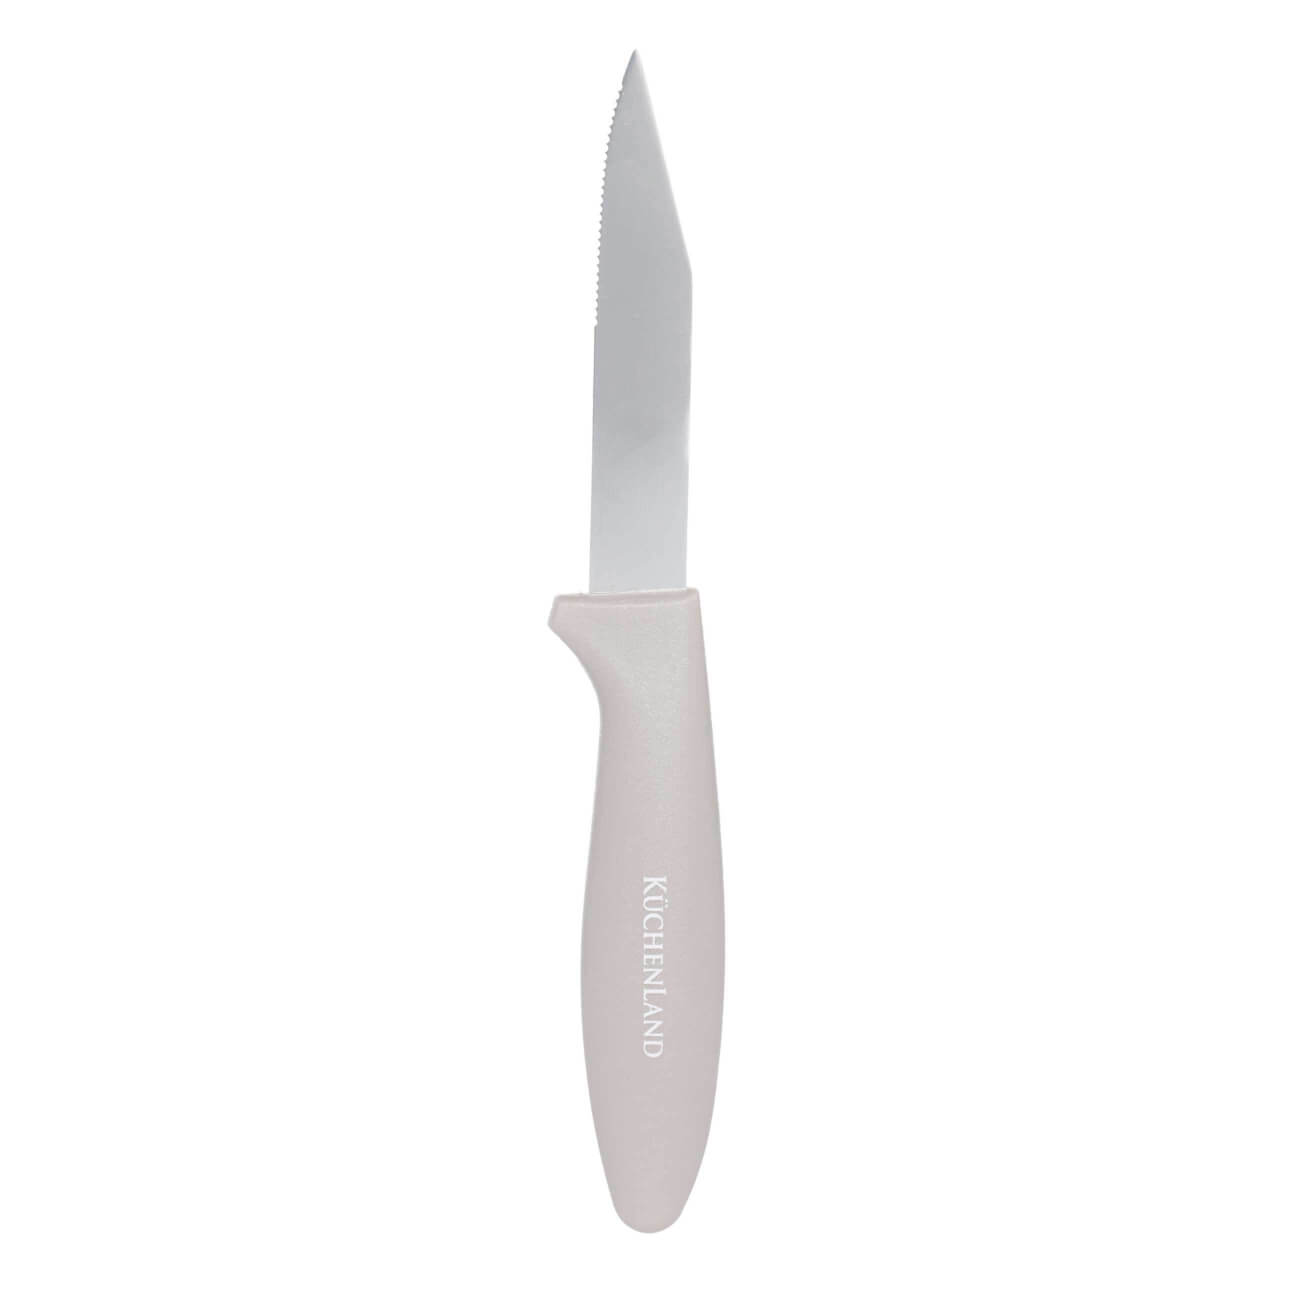 Нож для чистки овощей, 8 см, сталь/пластик, серо-коричневый, Regular нож для чистки овощей ingenio k2071814